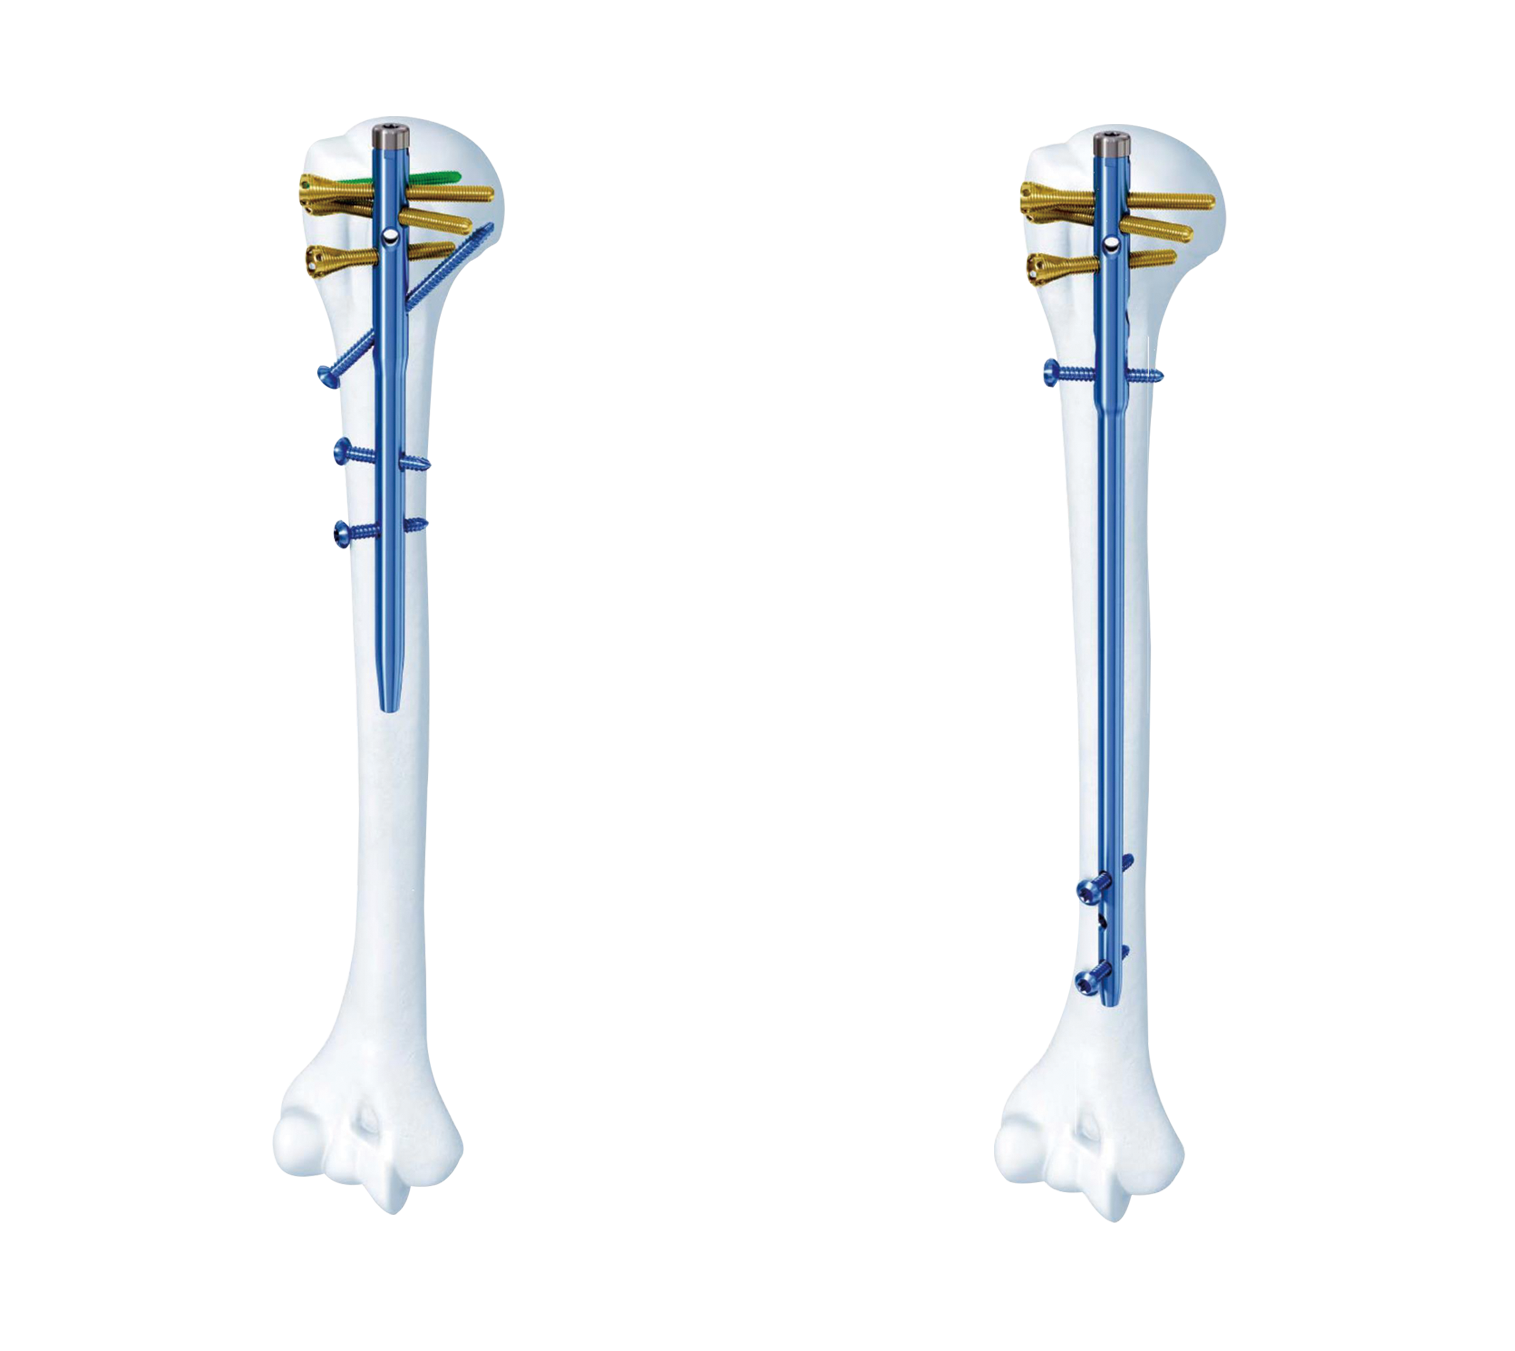 肱骨近端多維髓內釘系統